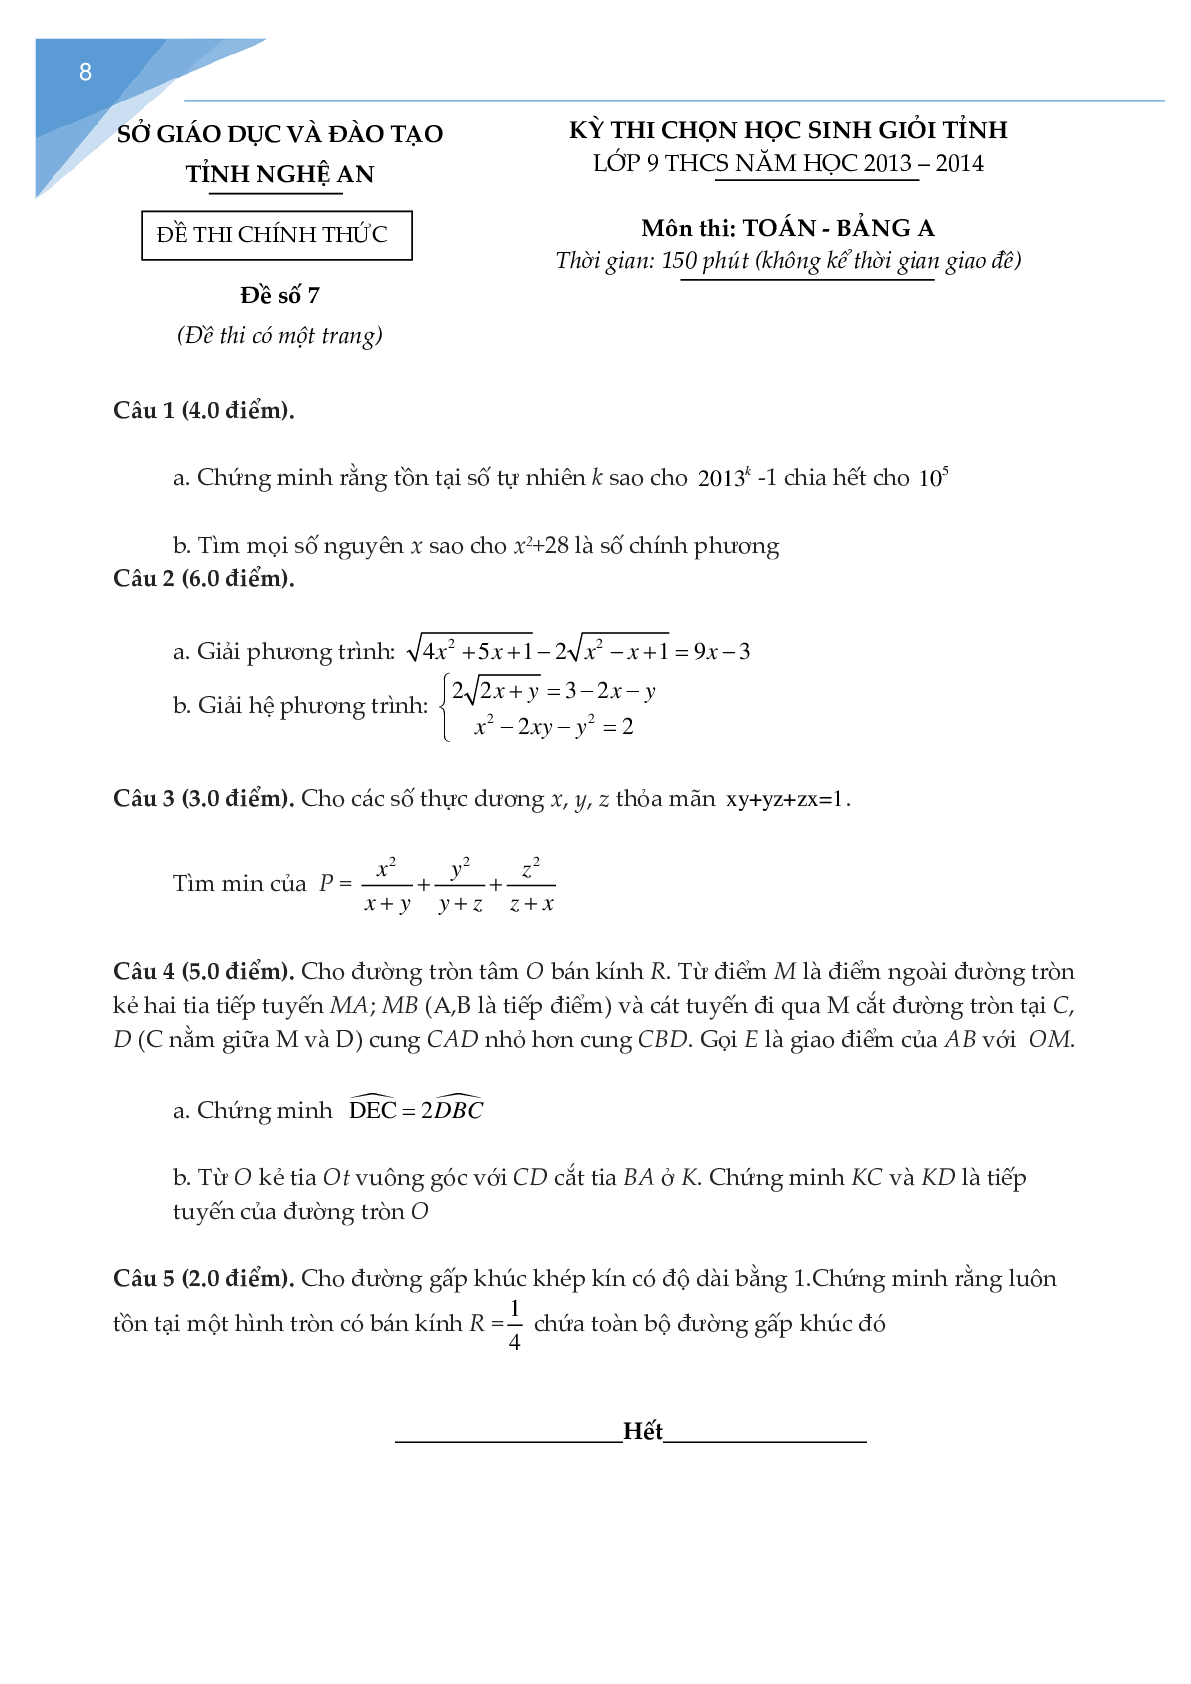 Bộ đề thi học sinh giỏi toán lớp 9 tỉnh Nghệ An (trang 7)